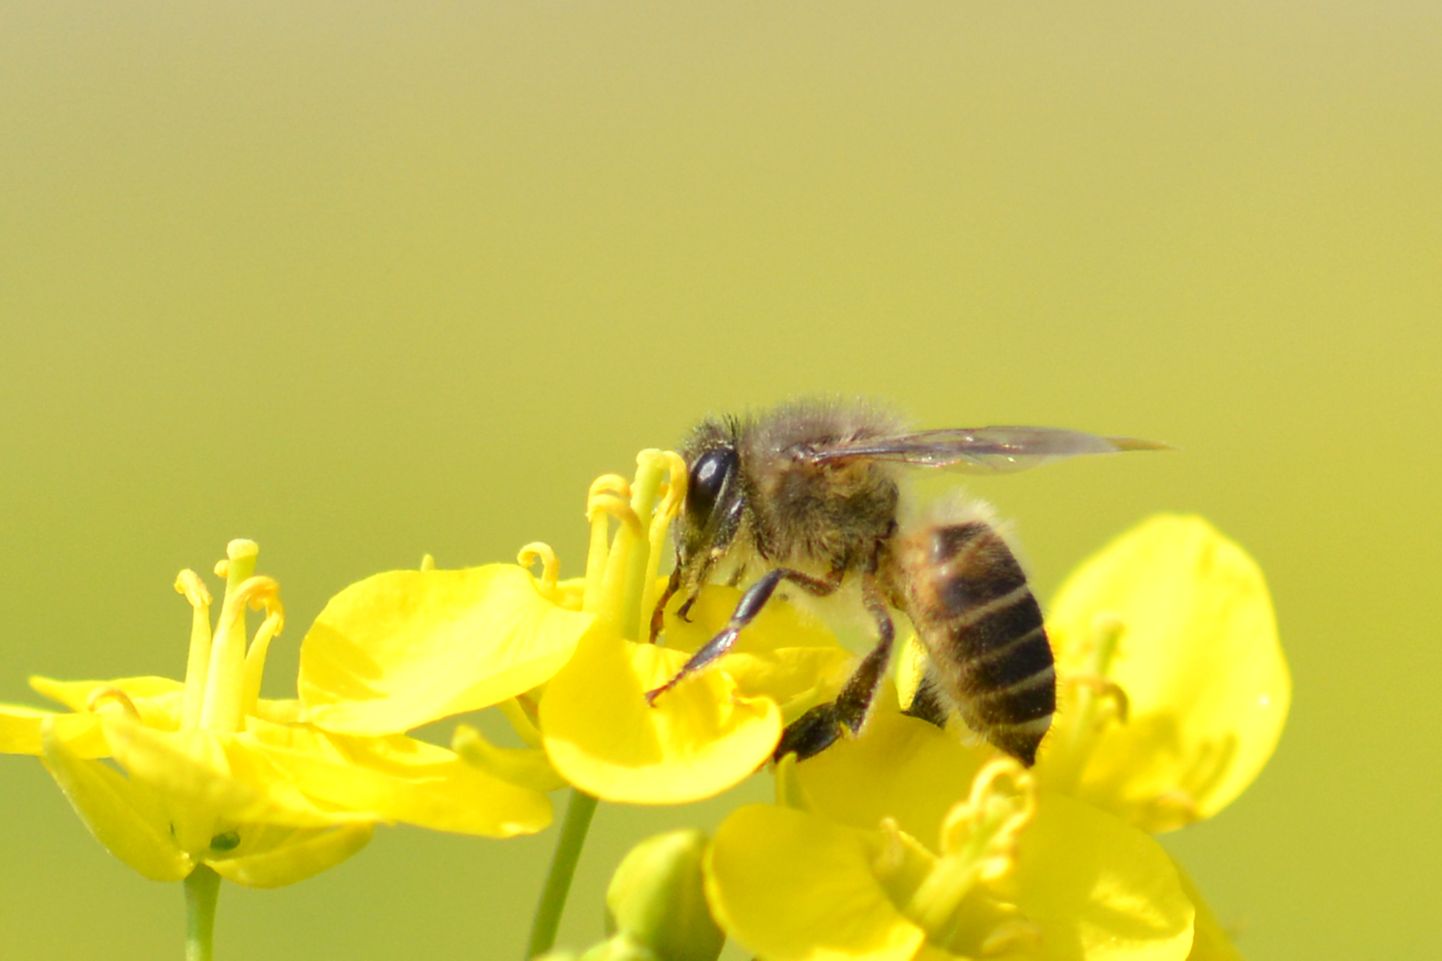 Putukamürgid on hävitavalt mõjunud nii mesilastele kui teistele tolmendajatele nagu sirelastele